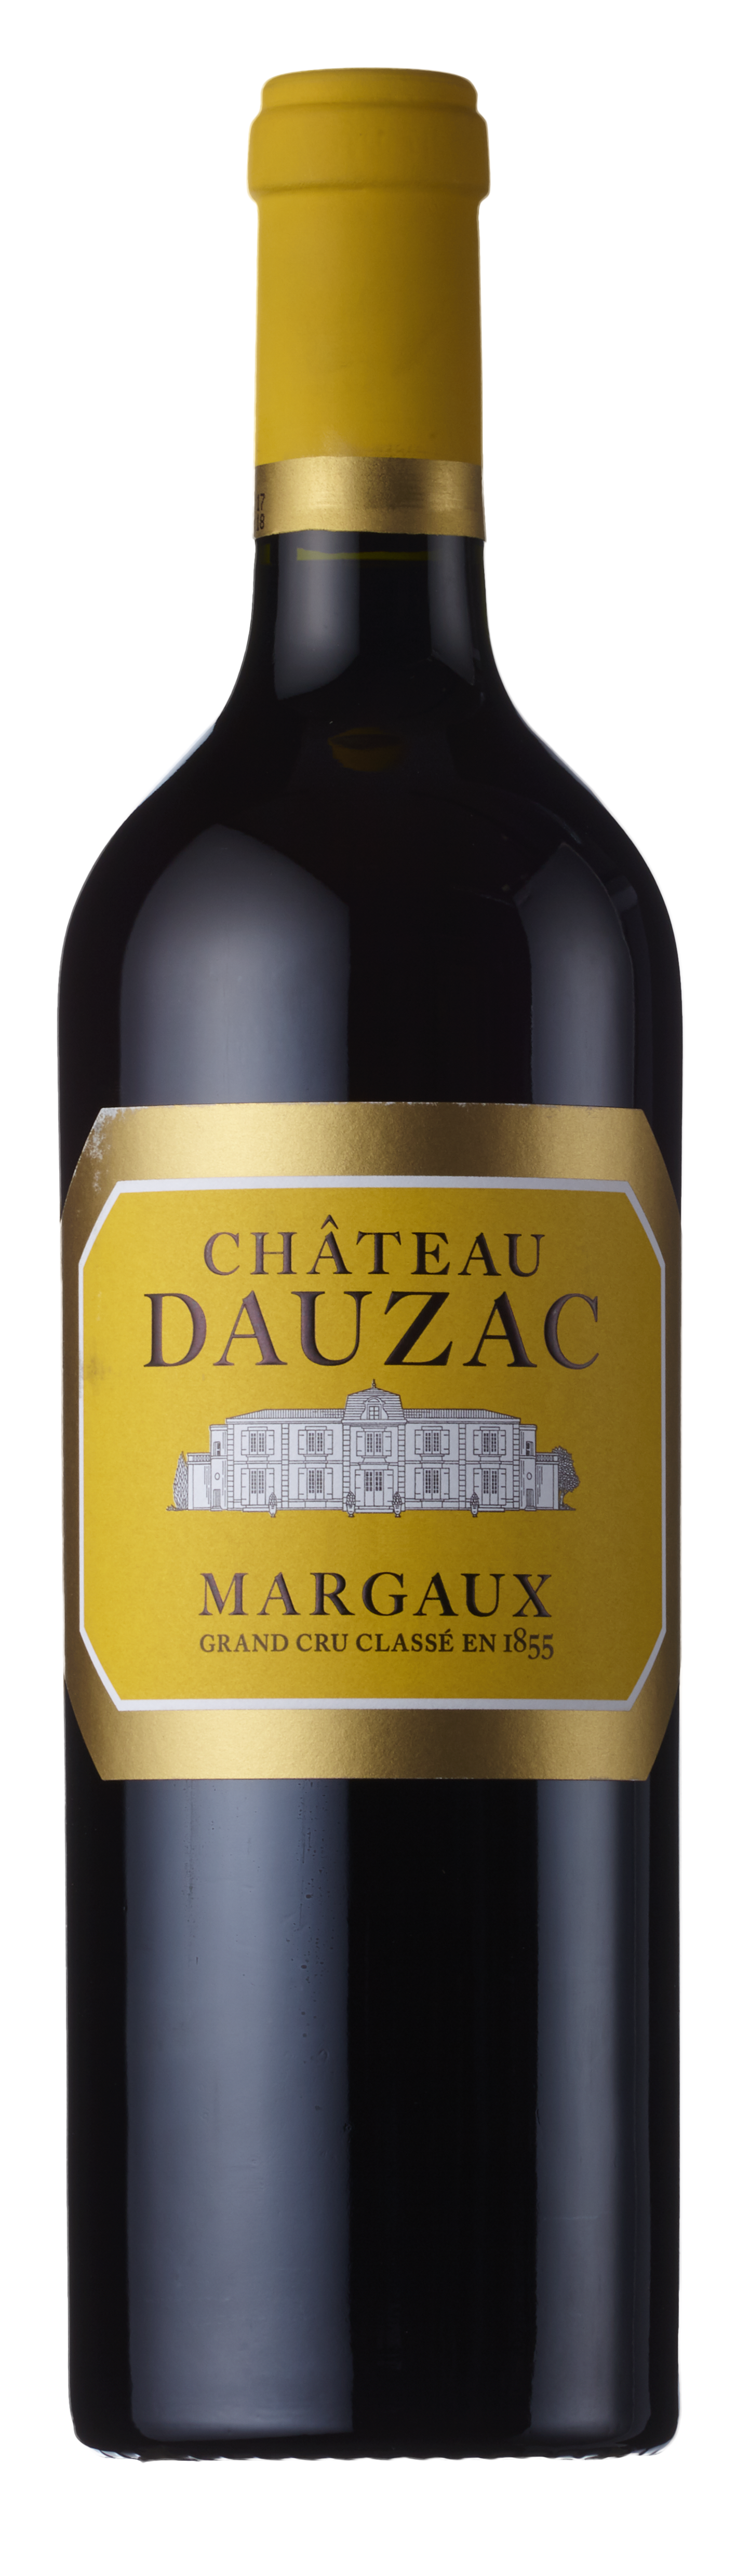 Château Dauzac 5ème Cru - France, Wine Alliance 2016 Margaux, Bordeaux, Classé